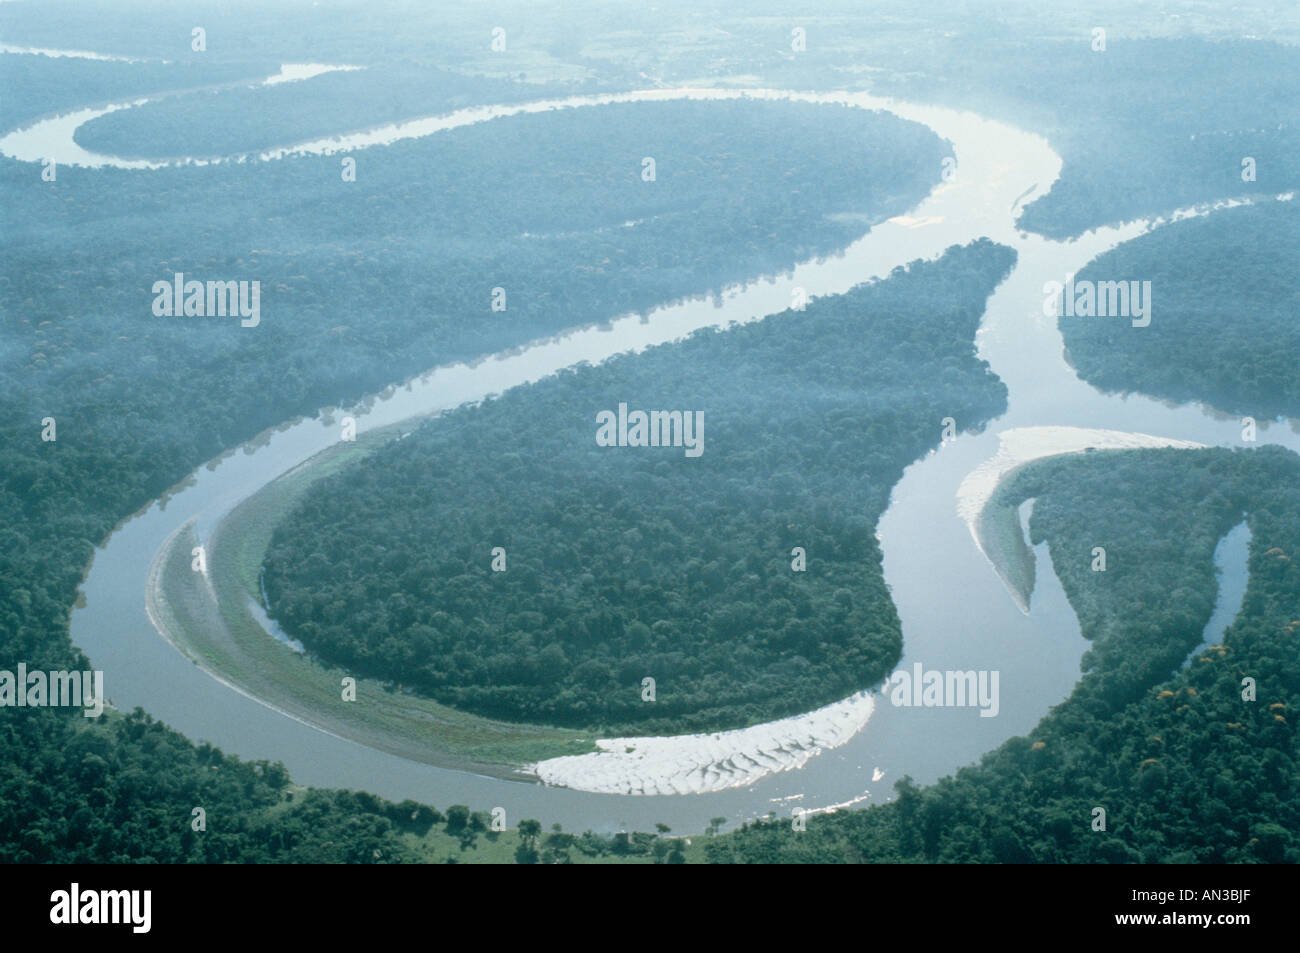 Крупные реки и озера бразилии 7. Самая широкая река в мире. Крупные реки и озера Бразилии. Самая большая река в мире. Риу-негру впадает в амазонку.